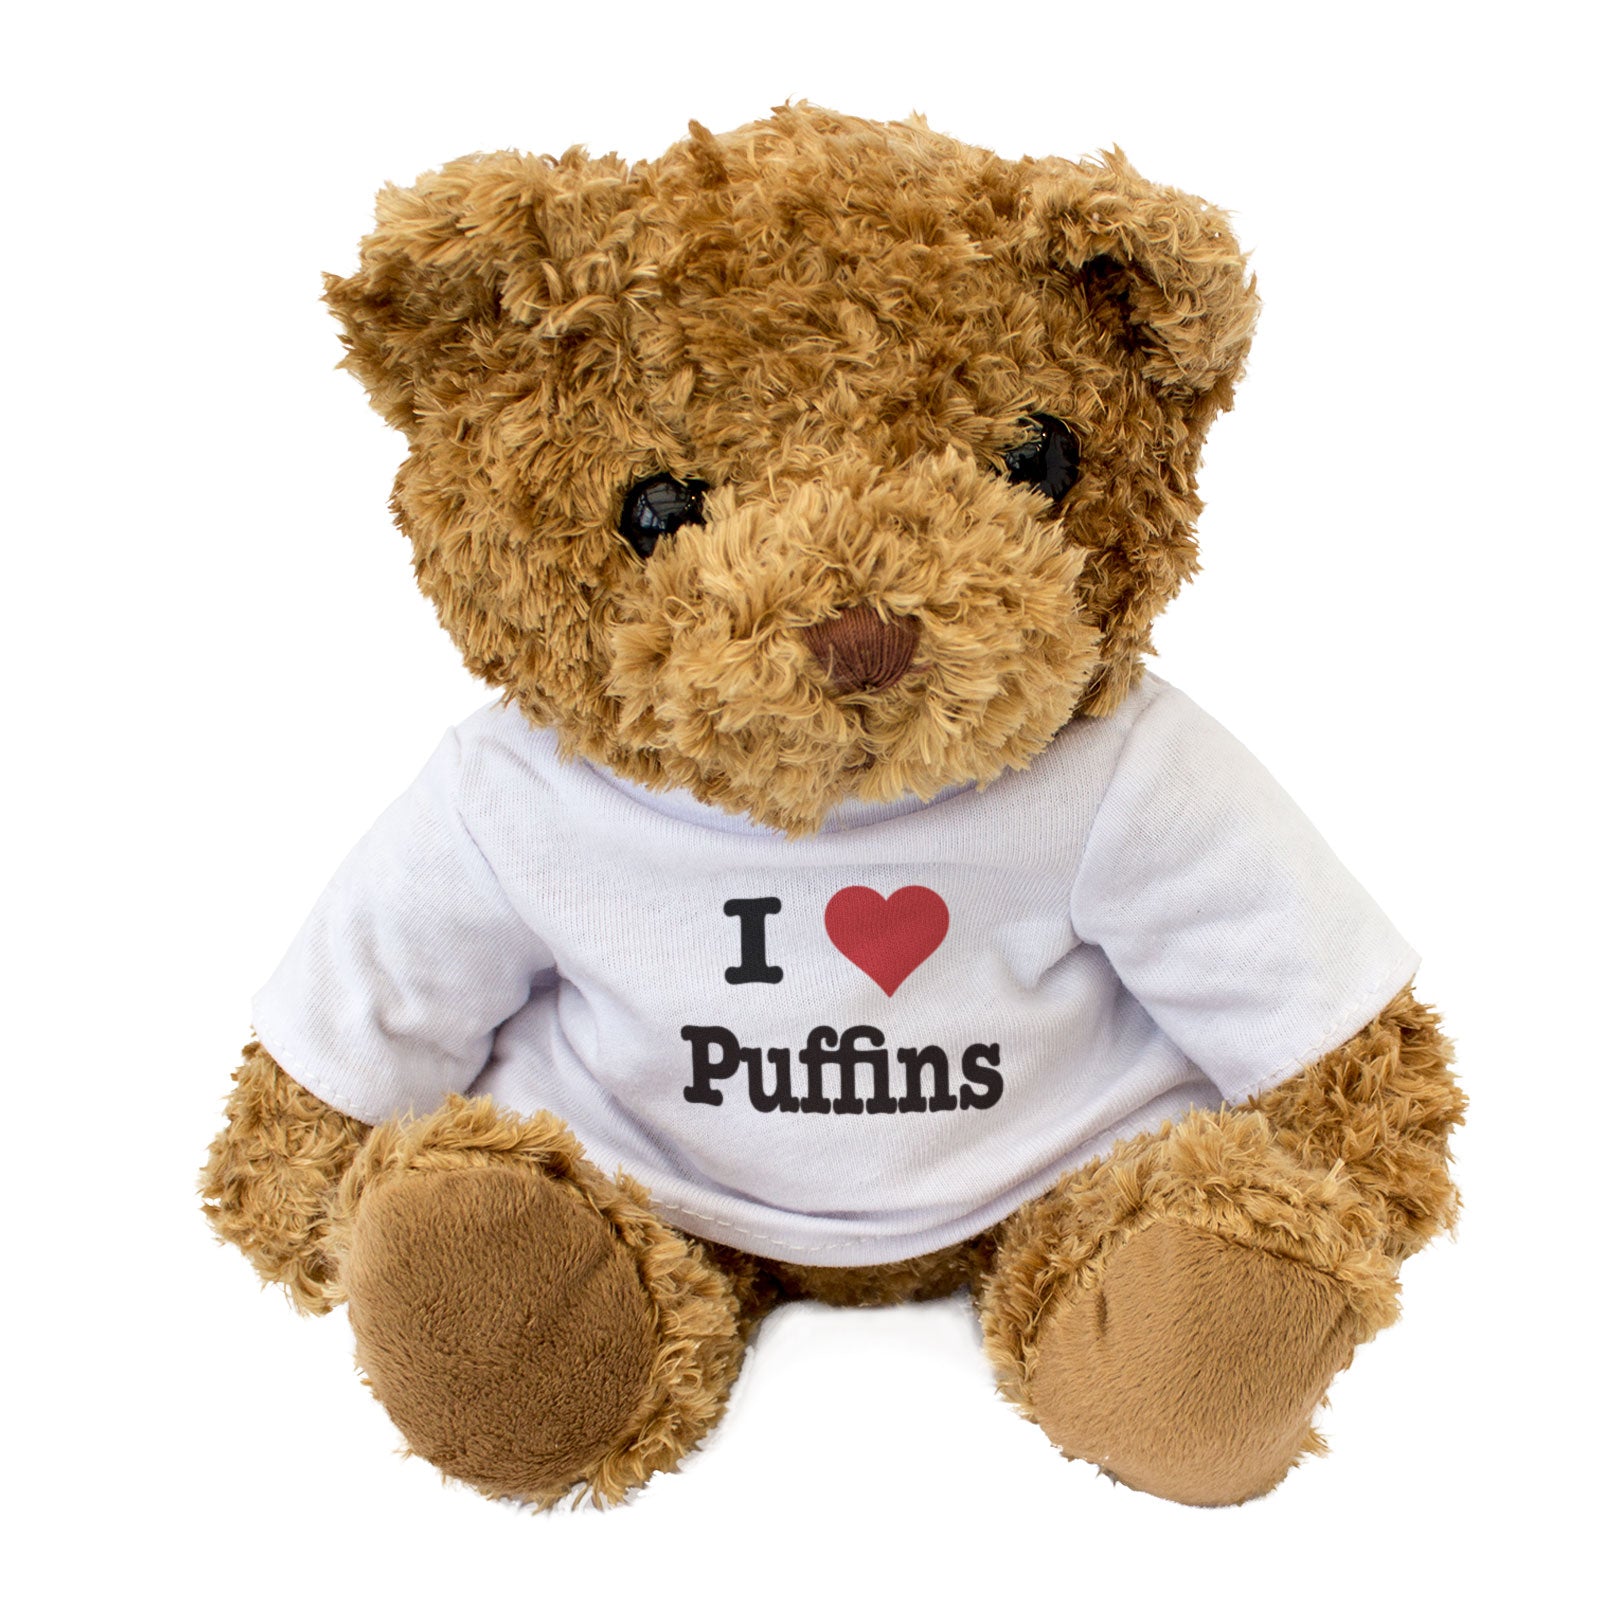 I Love Puffins - Teddy Bear